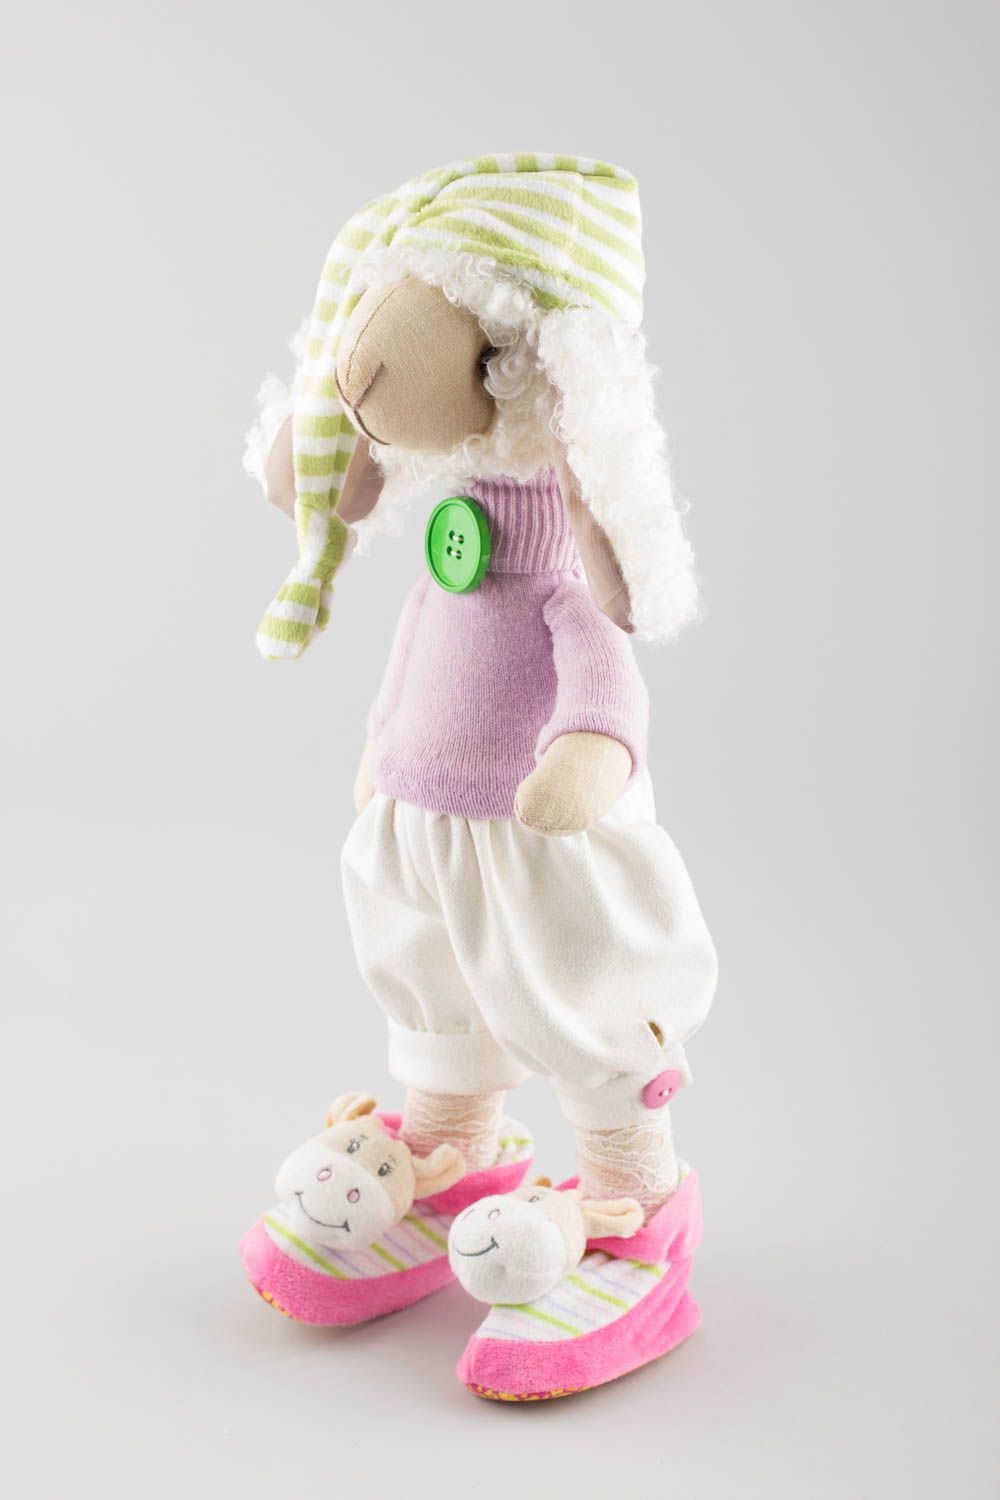 Textil Kuscheltier Schaf künstlerisch niedlich Spielzeug für Kinder und Deko foto 4